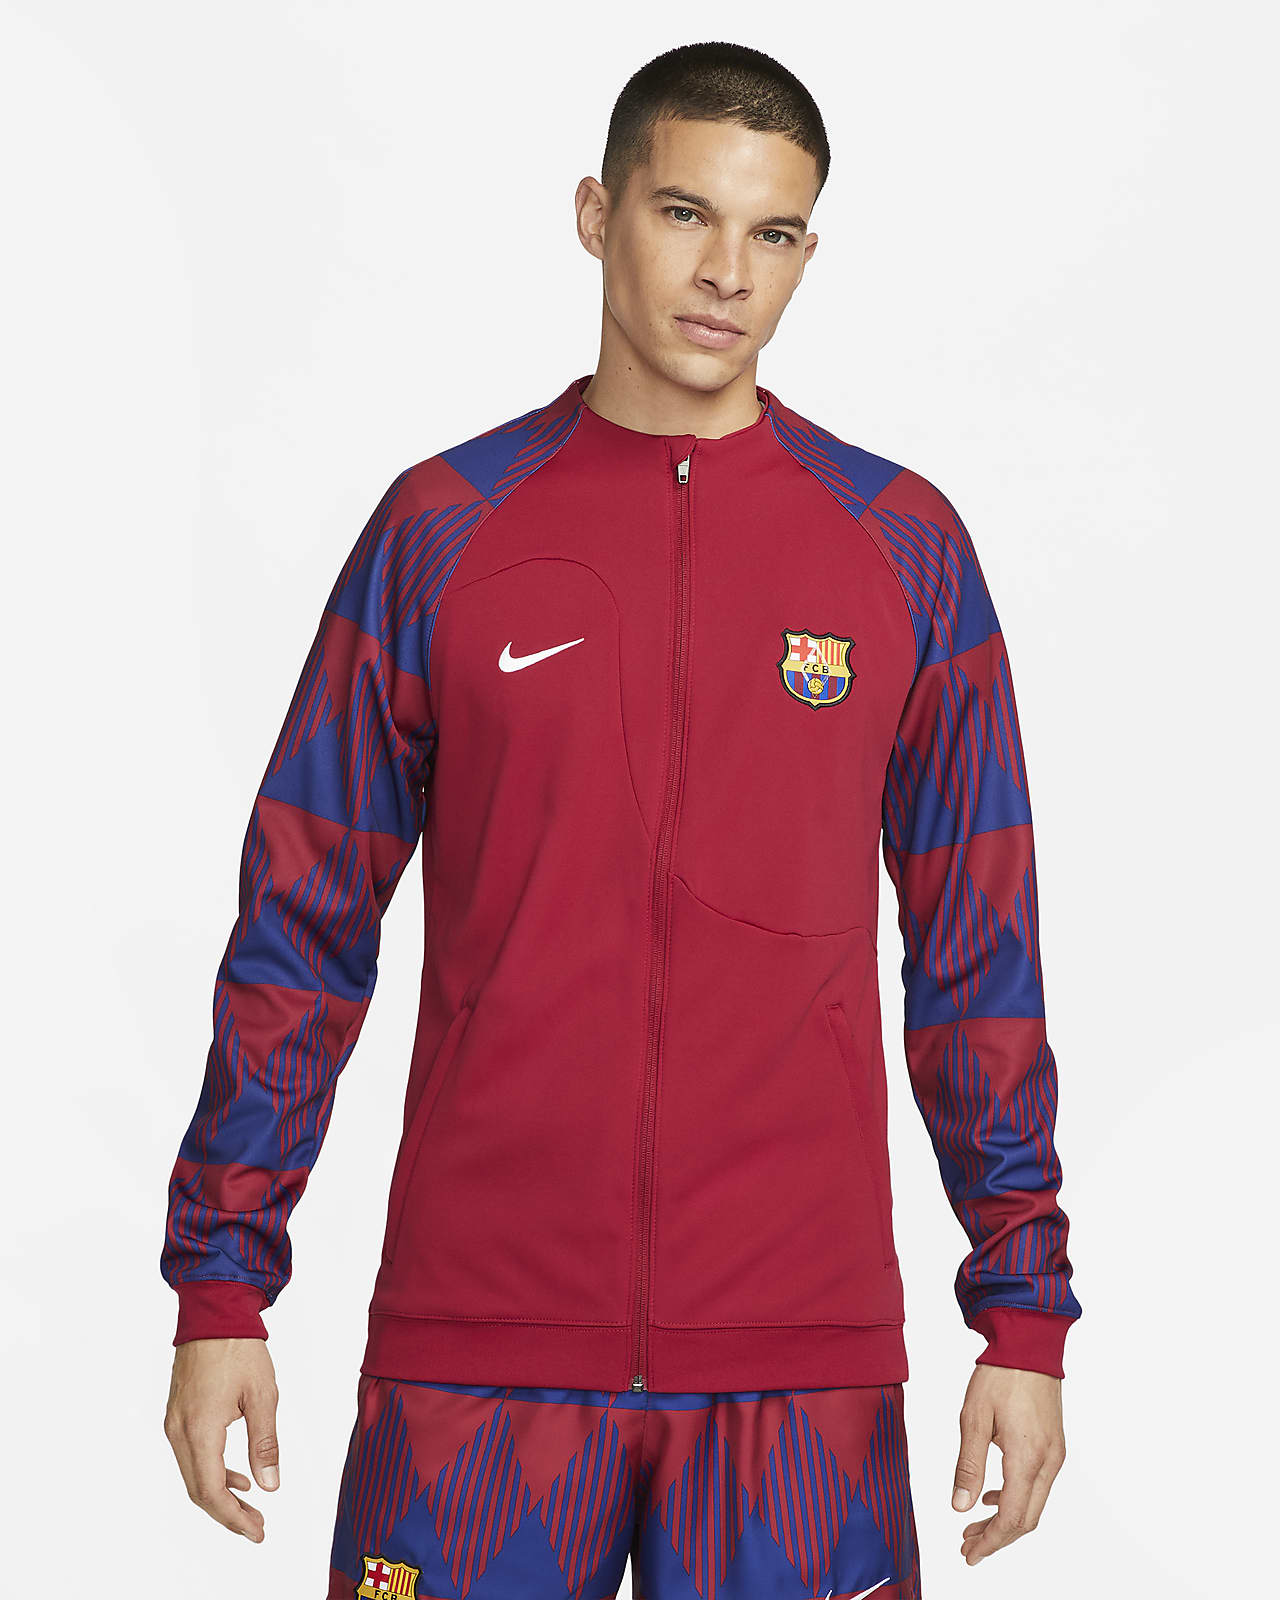 Pánská fotbalová bunda Nike FC Barcelona Academy Pro se zipem po celé délce